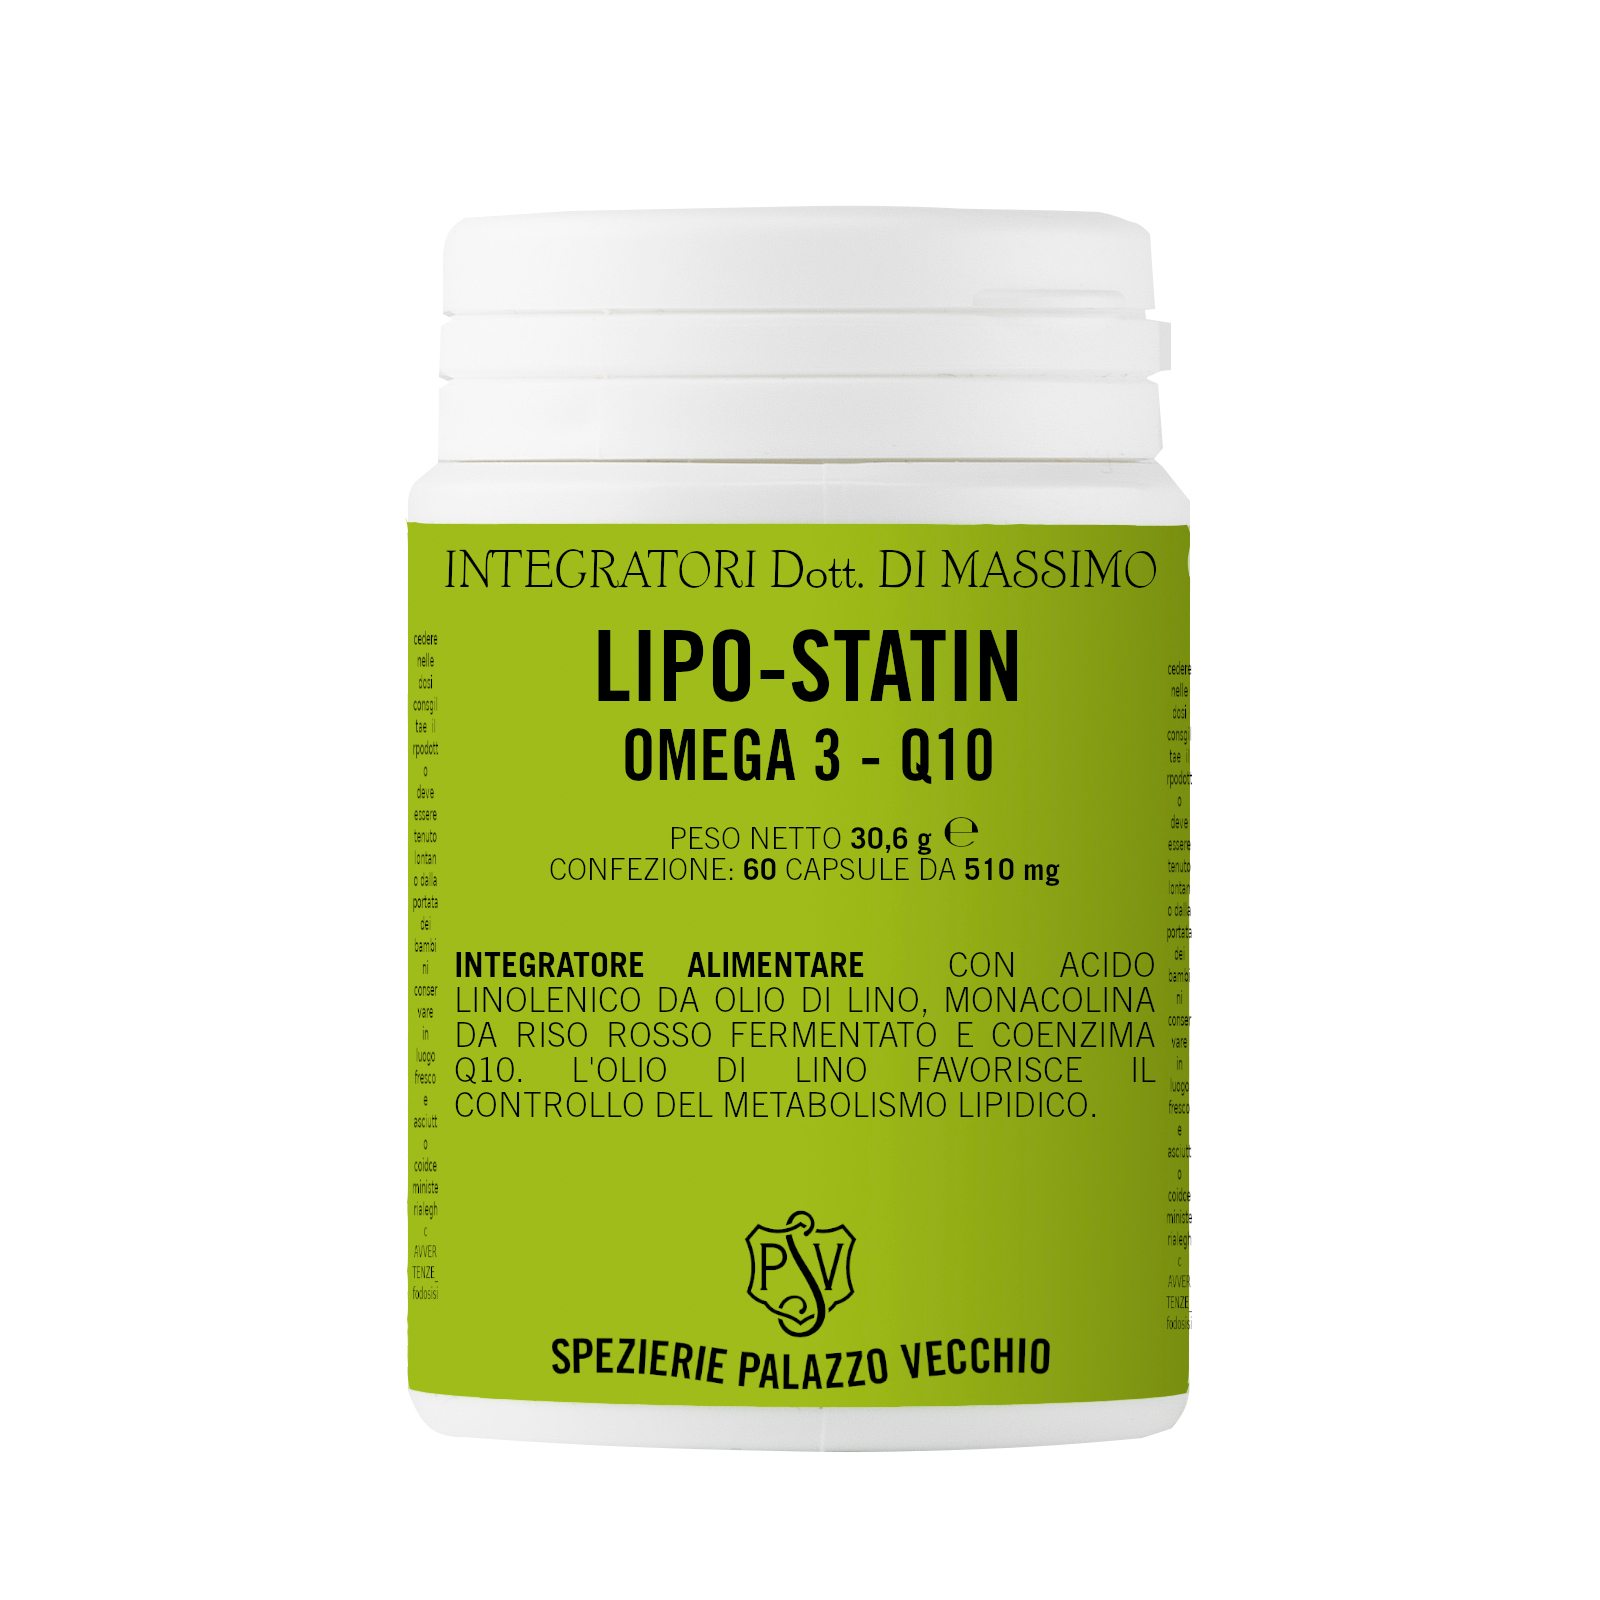 LIPO STATIN Omega 3 - Riso rosso fermentato-0